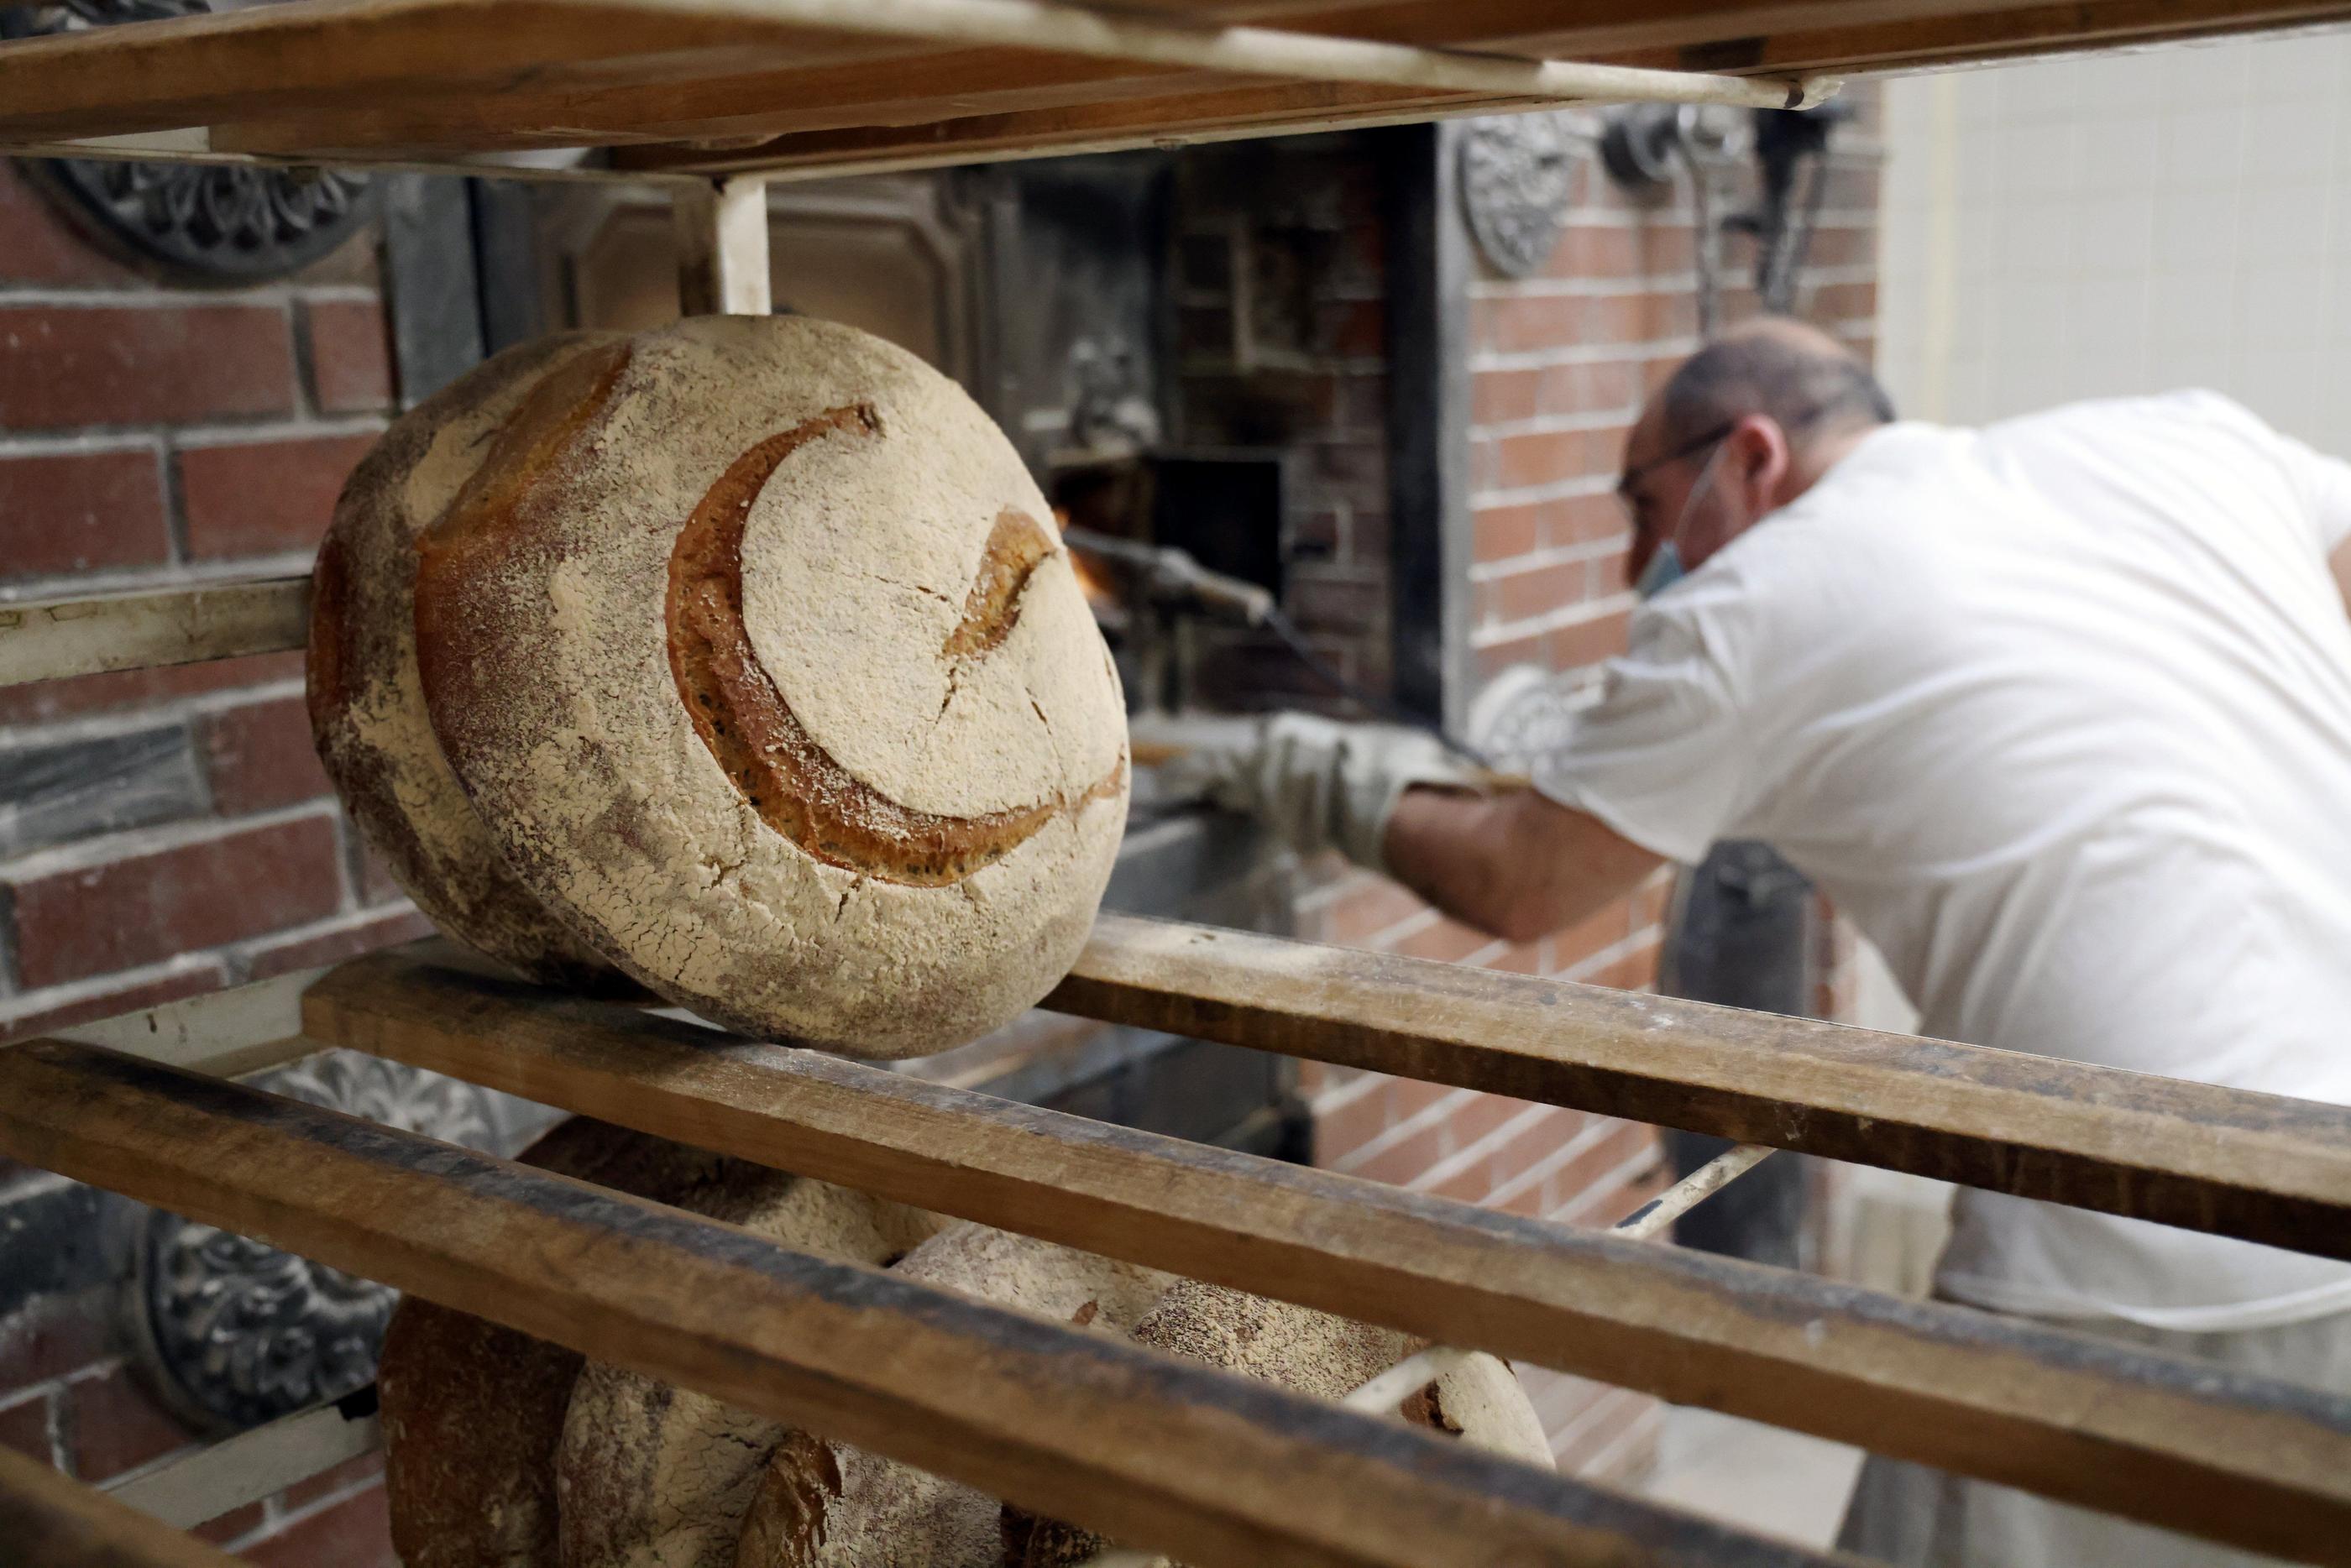 Inspirés par de grands noms comme Poilâne (ici en photo), de nombreux boulangers cherchent à produire un pain de meilleure qualité que la baguette à mie blanche. LP/Jean-Baptiste Quentin